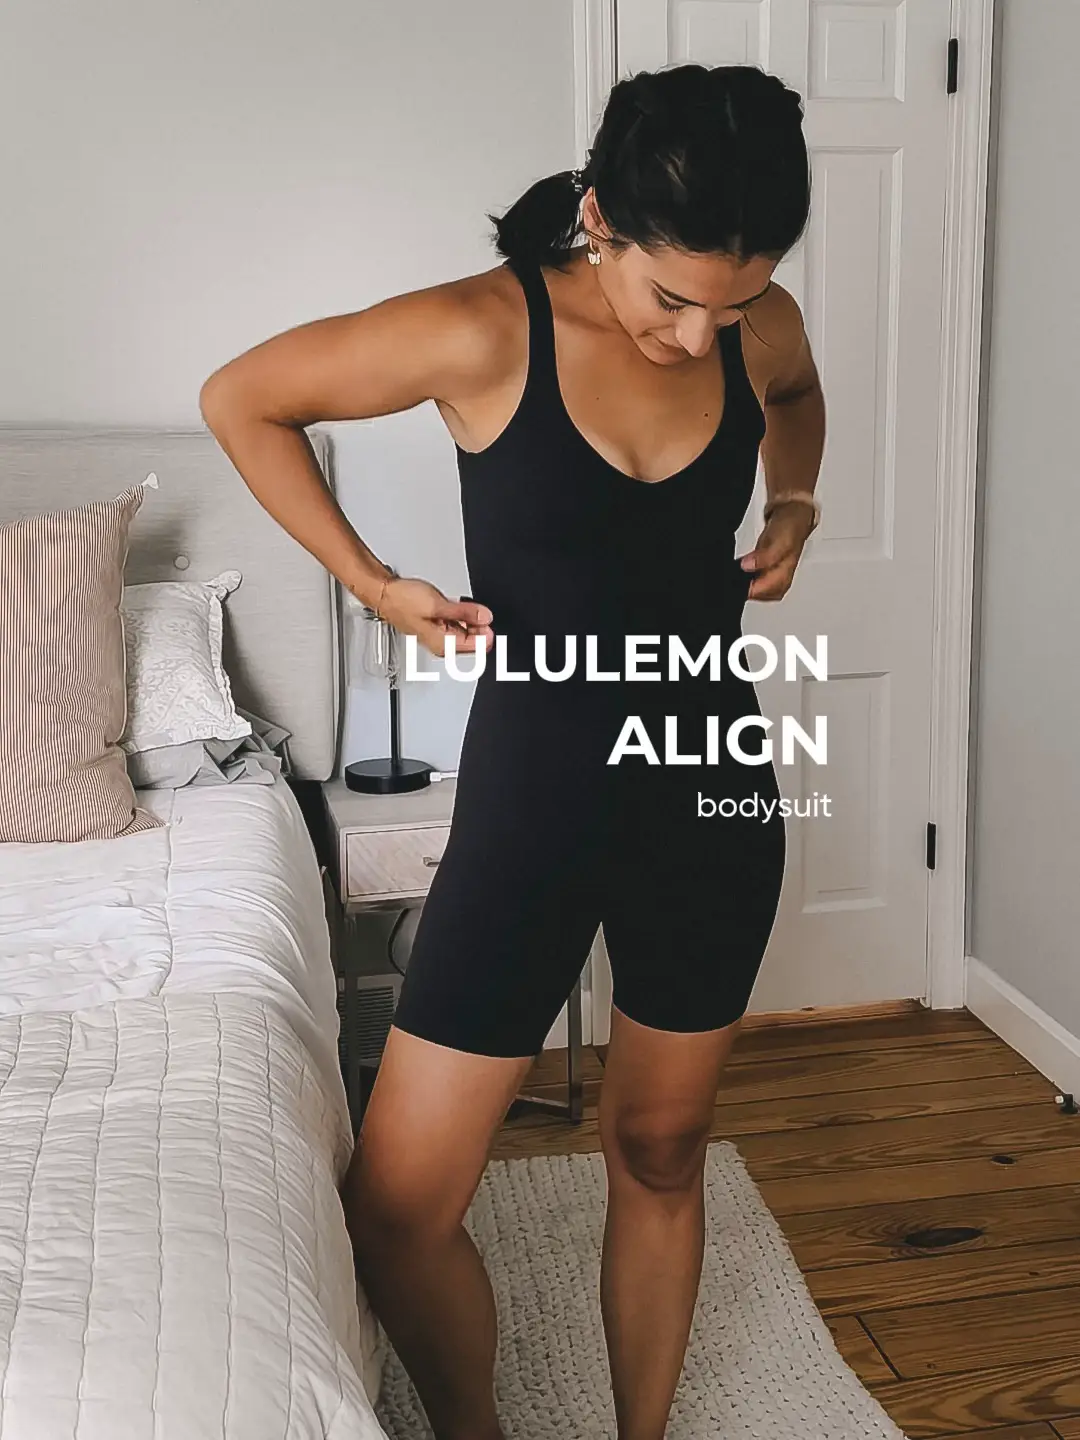 Lululemon align bodysuit at 19 weeks pregnant. #ootd #lululemon